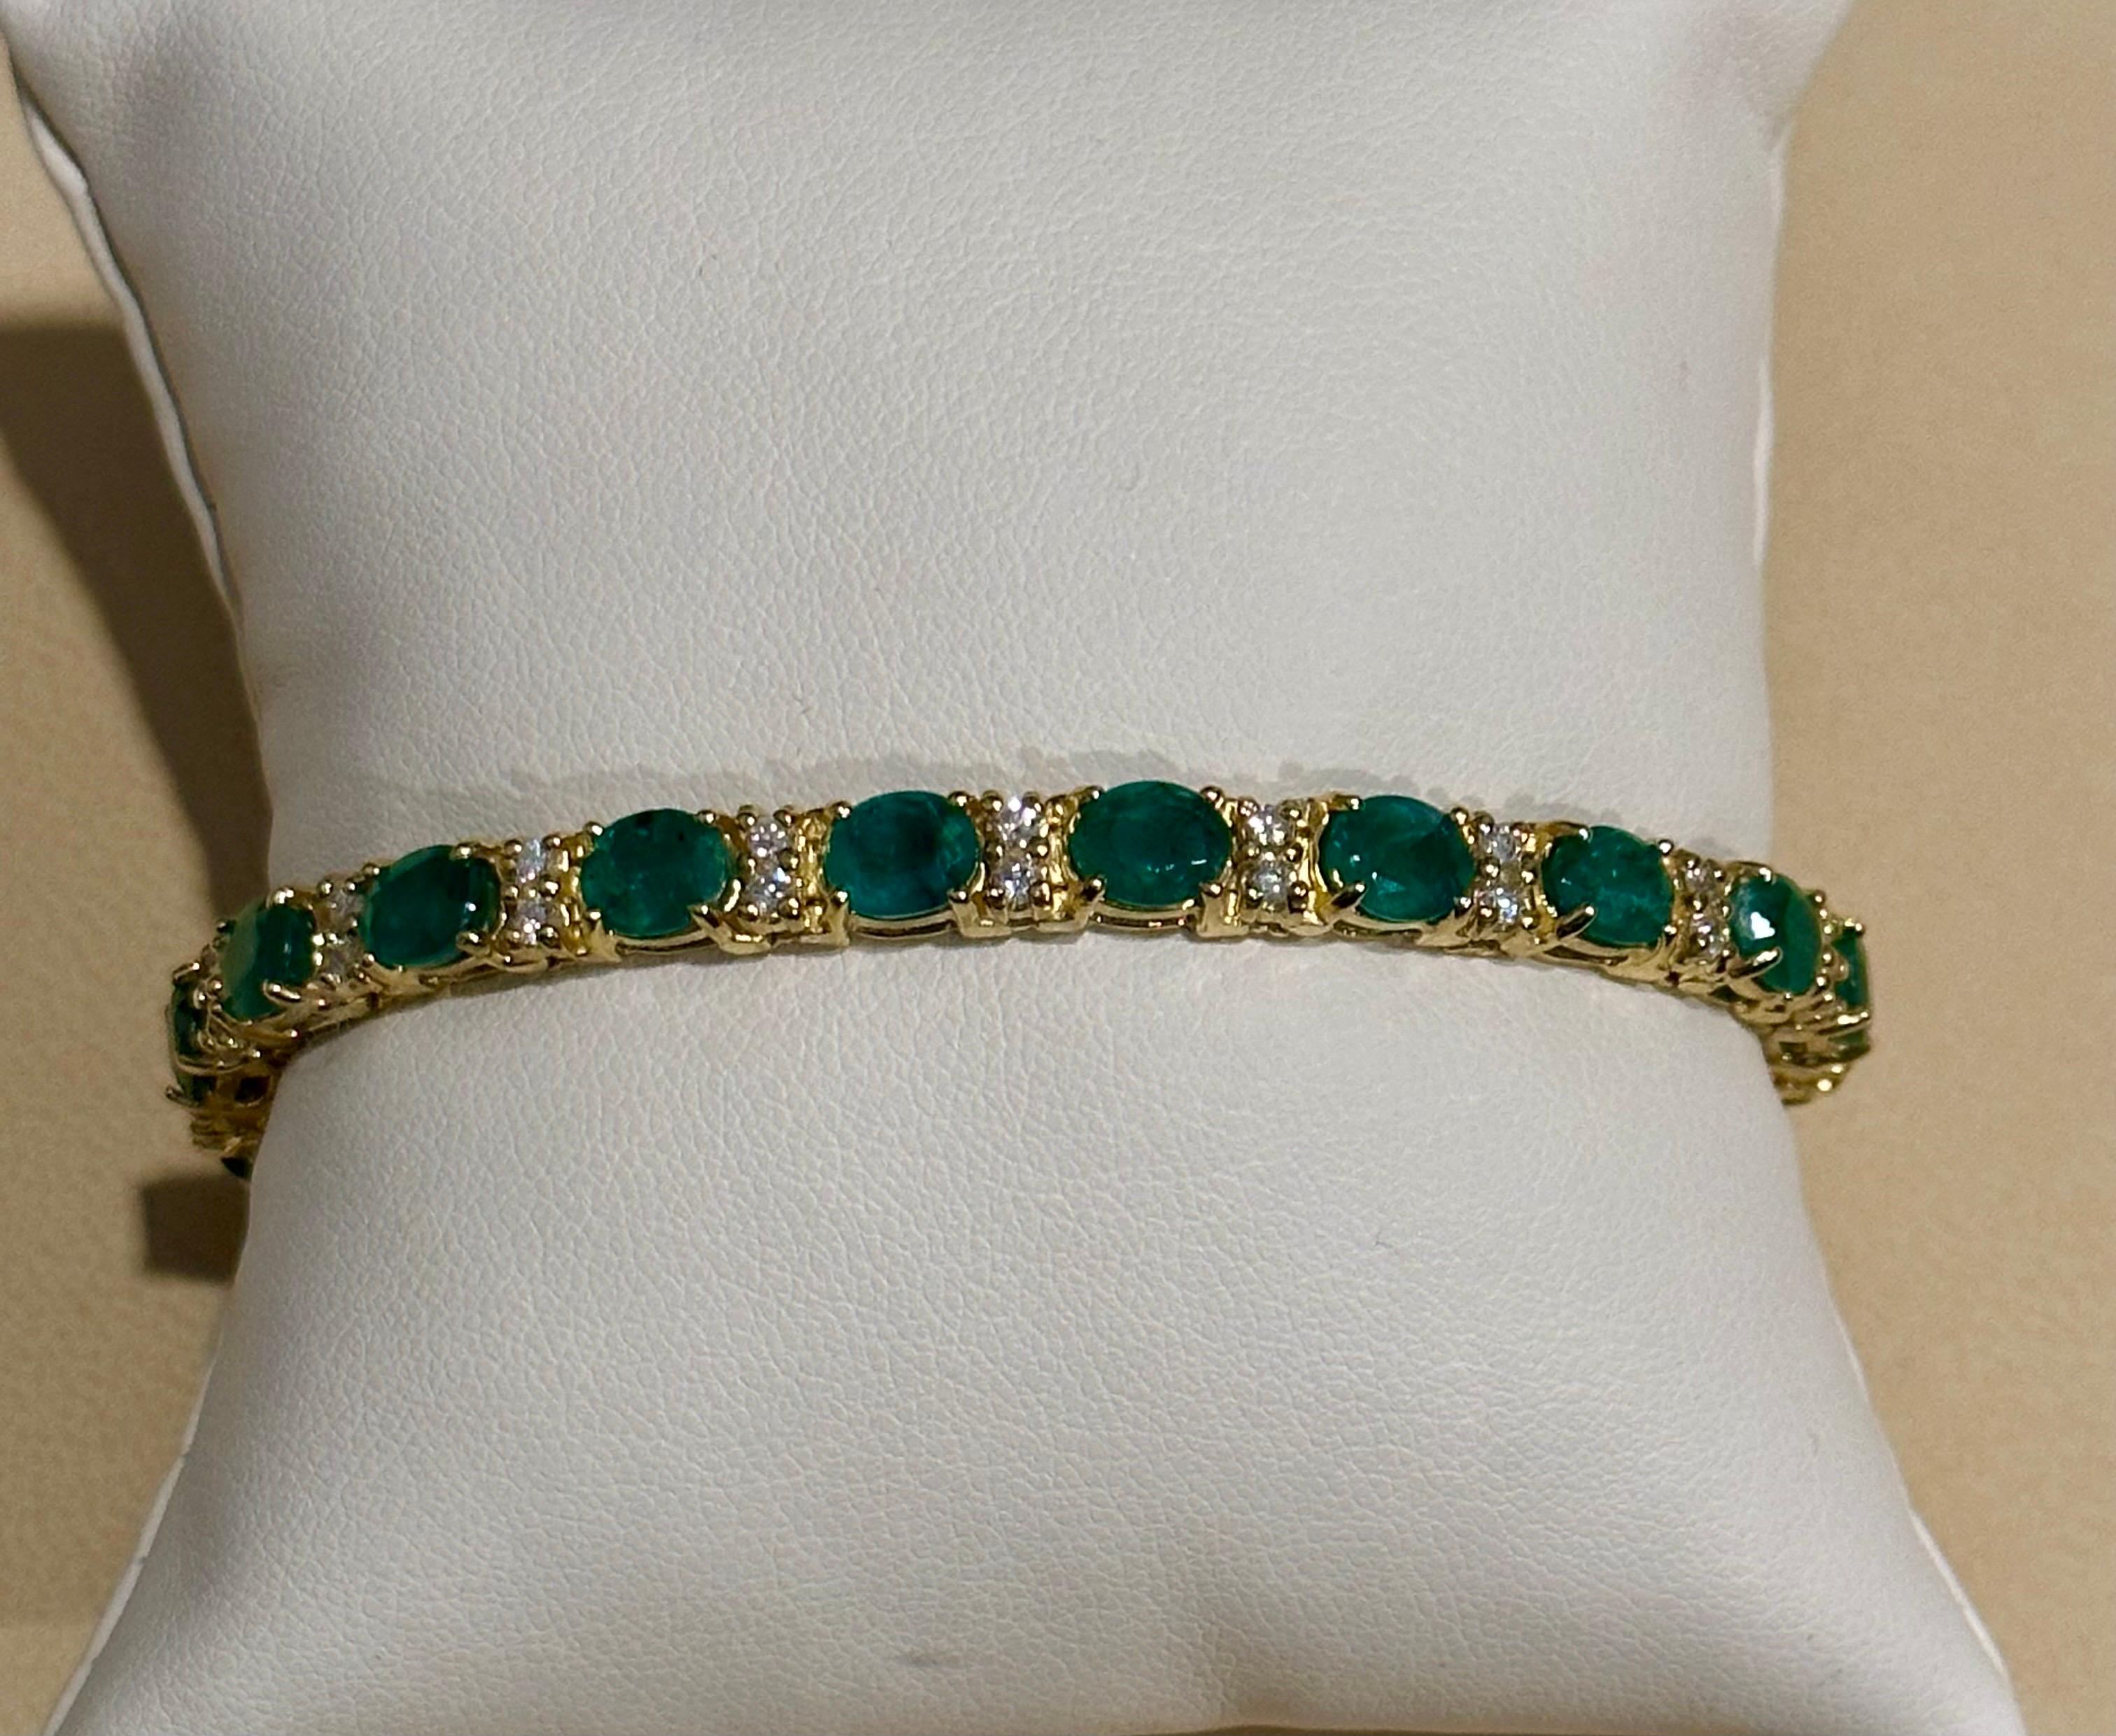 13 Carat Natural Emerald & Diamond Cocktail Tennis Bracelet 14 Karat Yellow Gold 8